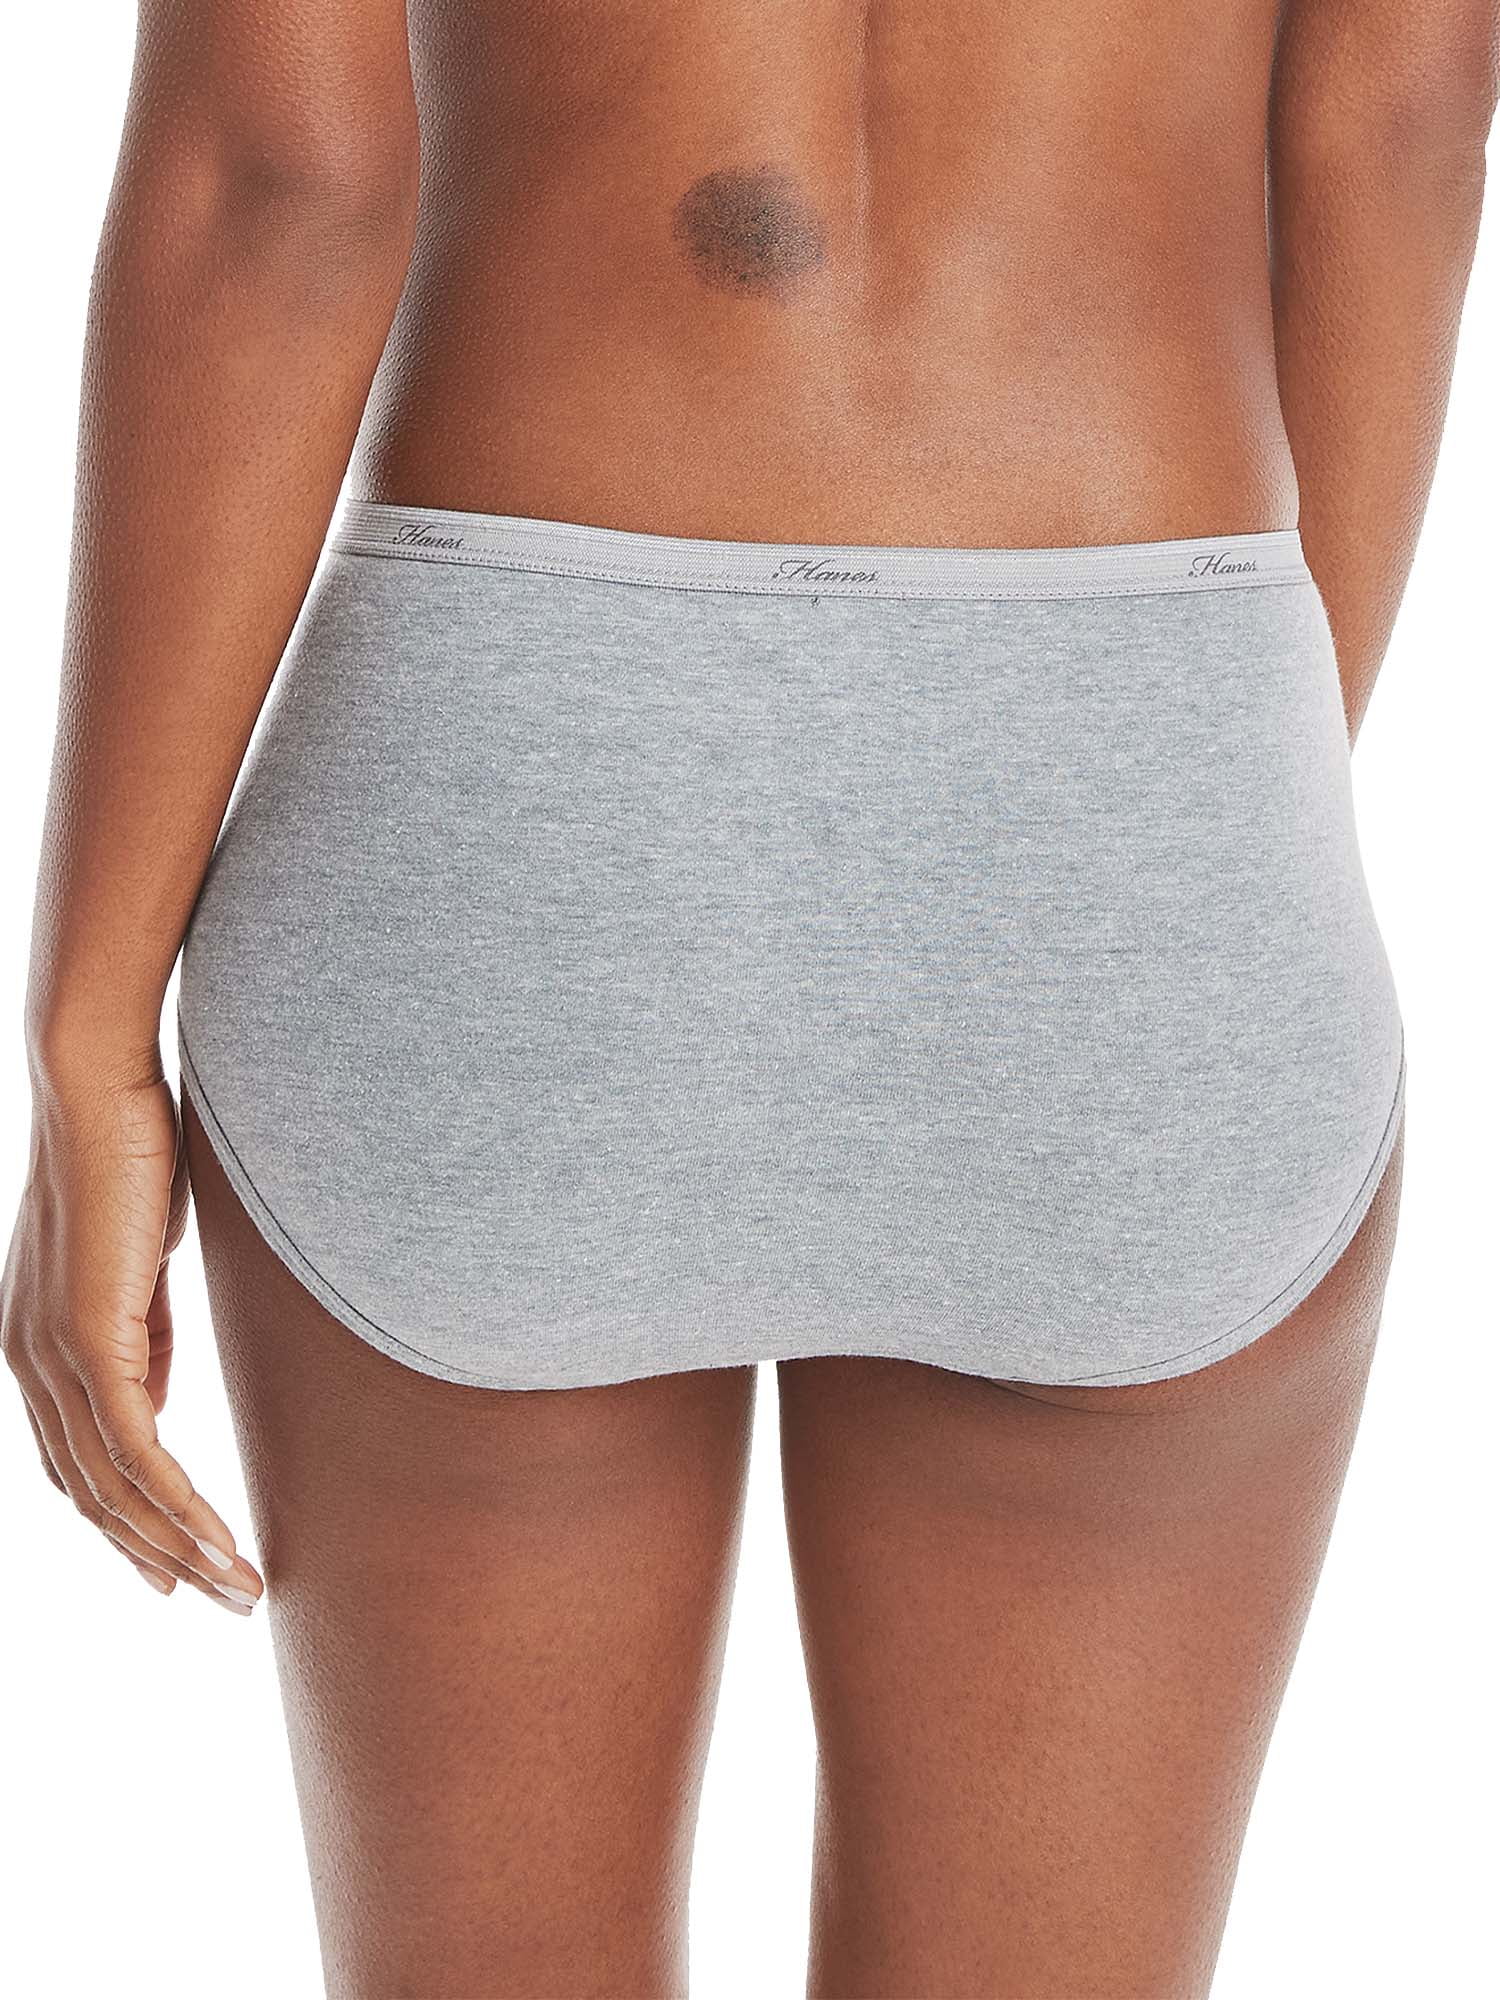 Hanes Women's Cotton Brief Underwear, Moisture-Wicking, 6-Pack Assorted 2 7  